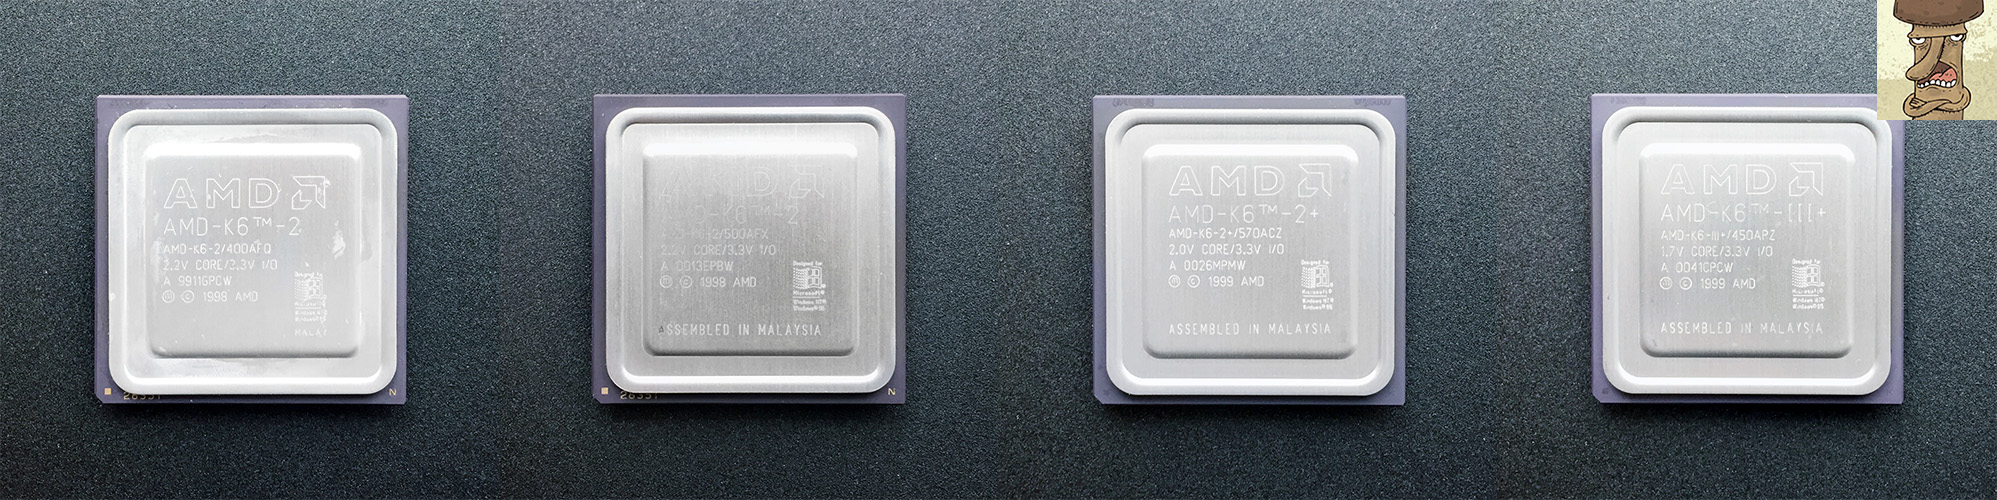 AMD_K6-2_400__500_K6-2+_570_K6-III+_450.jpg